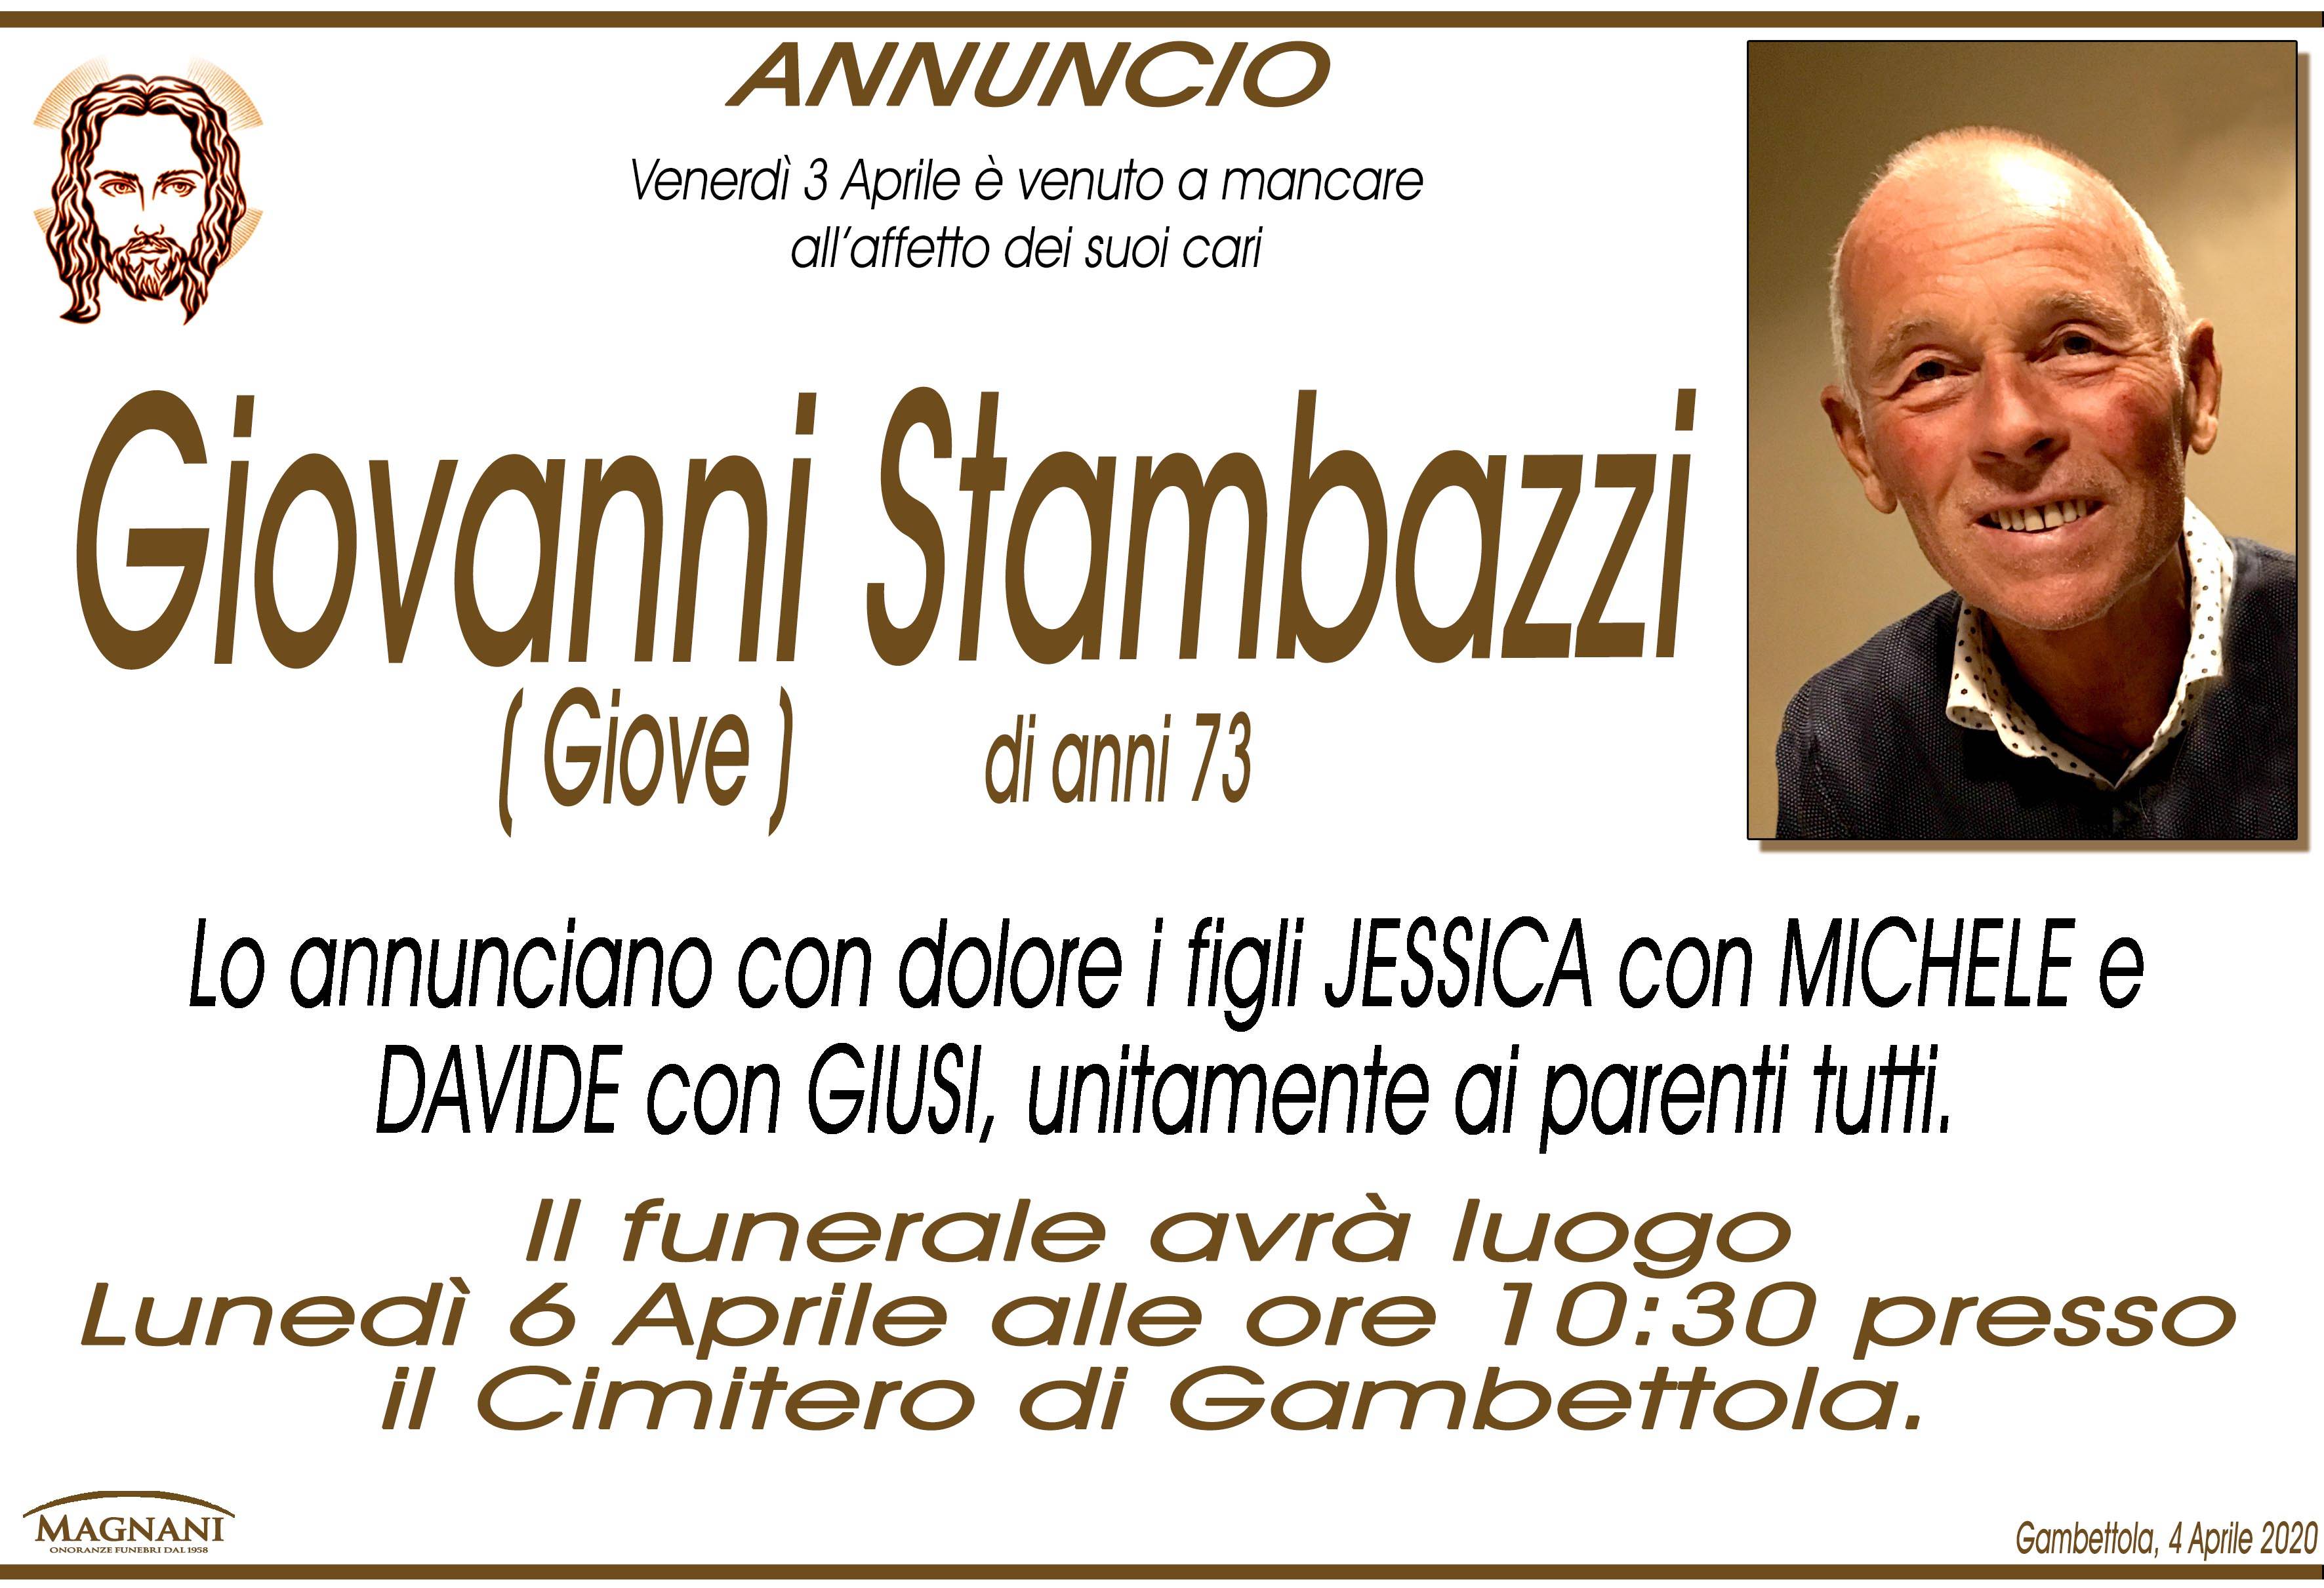 Giovanni Stambazzi